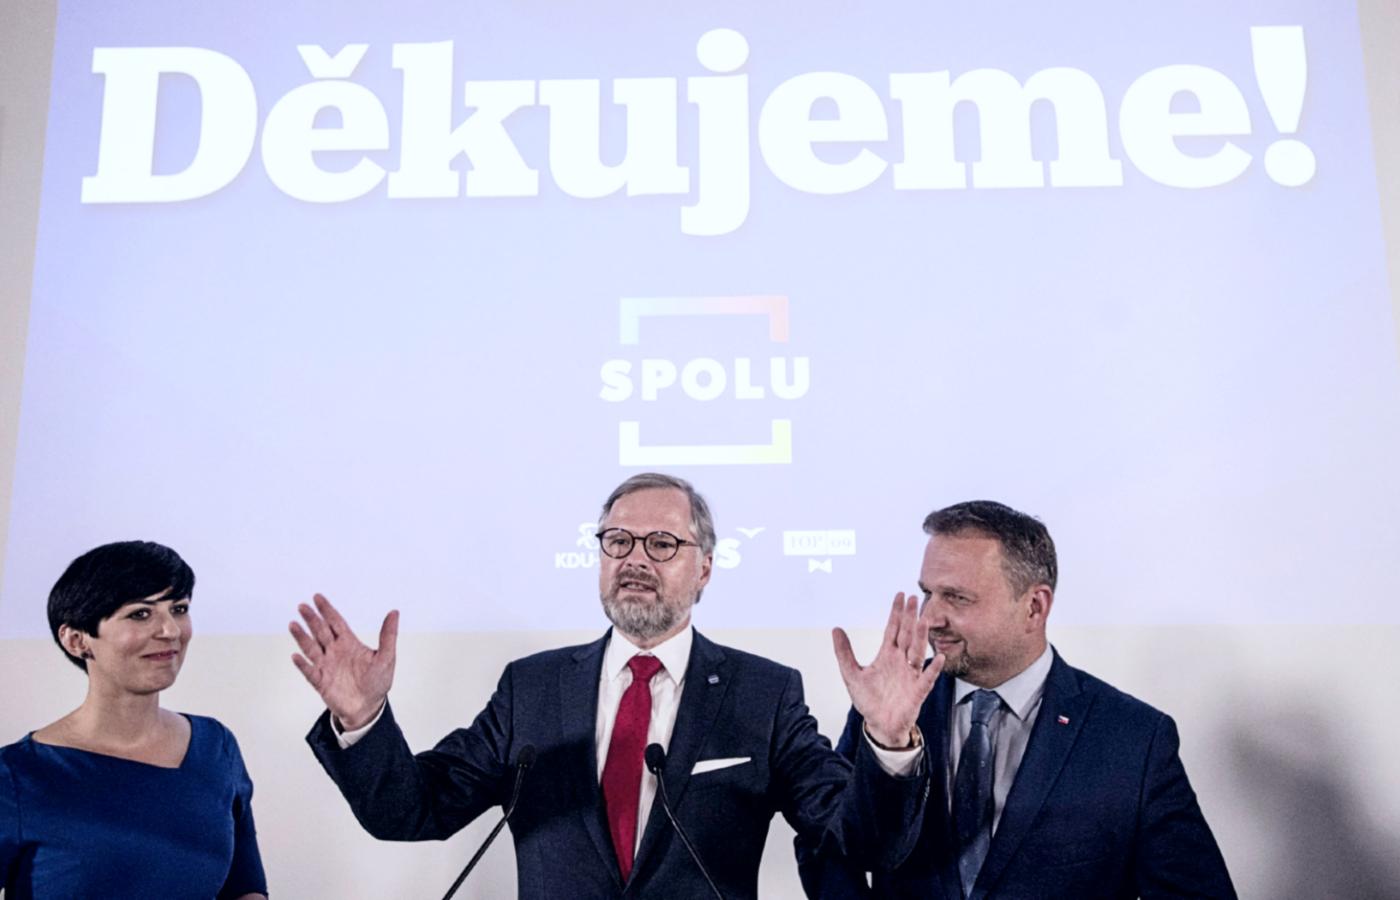 Od lewej: Marketa Pekarova Adamova (Tradycja Odpowiedzialność Dobrobyt 09/TOP 09), Petr Fiala (Obywatelska Partia Demokratyczna/ODS) i Marian Jureczka (Unia Chrześcijańska i Demokratyczna – Czechosłowacka Partia Ludowa/KDU-CzSL), liderzy partii wchodzących w skład koalicji SPOLU